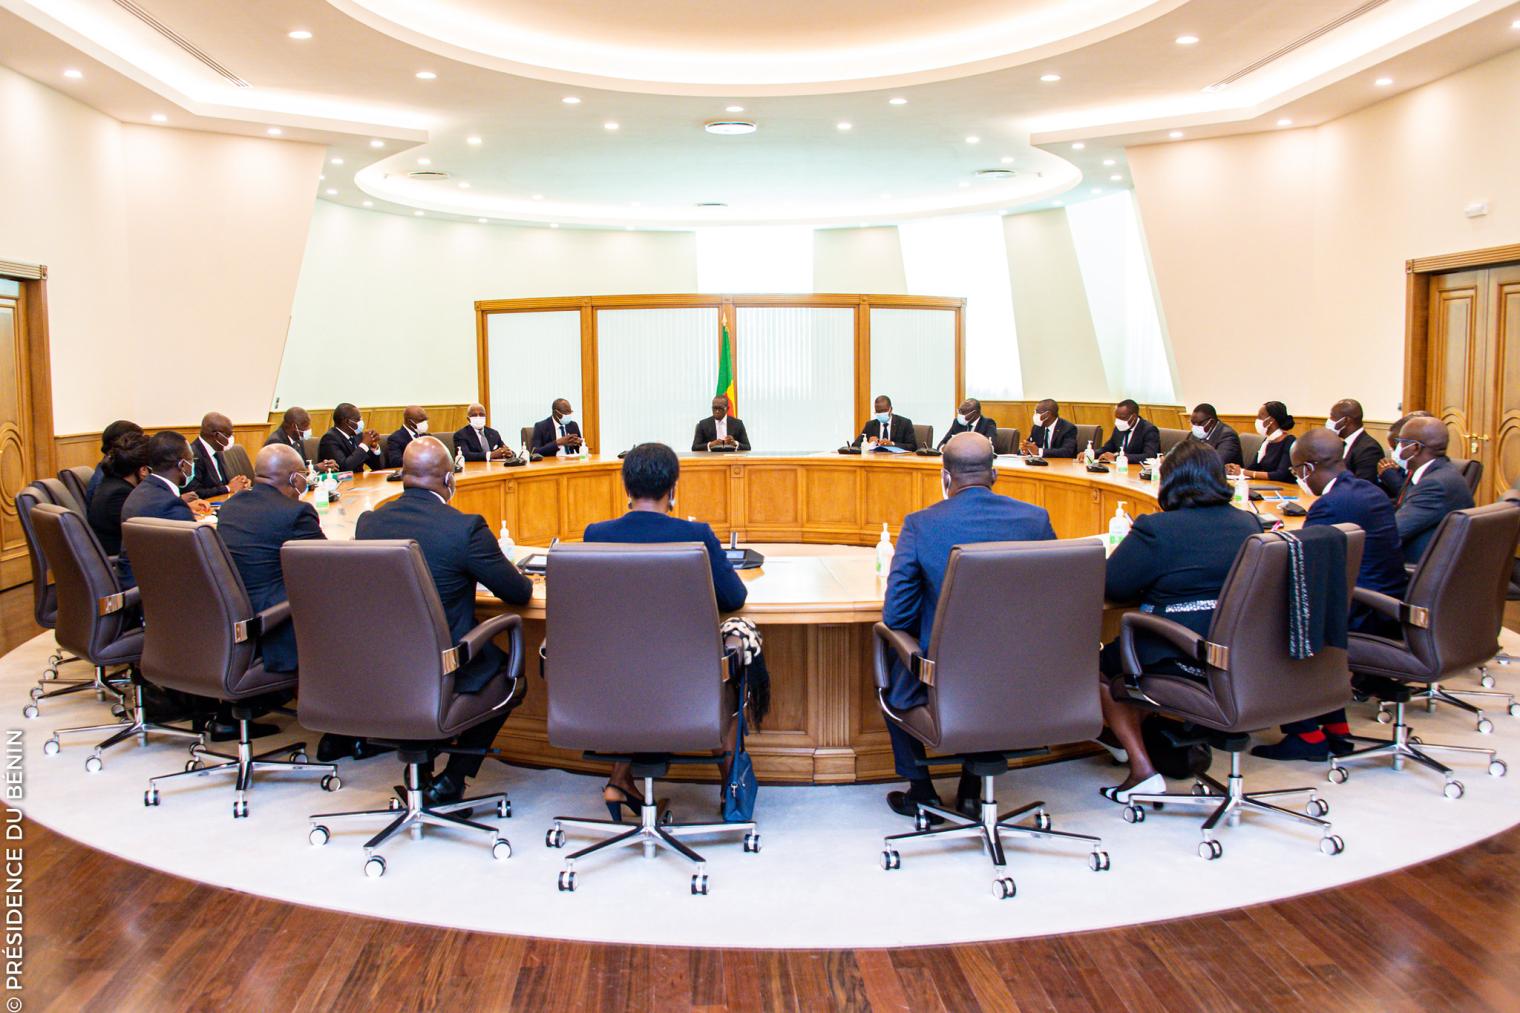 Bénin – Conseil des ministres : recrutement de 15 auditeurs à l’IGF, compte rendu de la session du 24 mai 2023